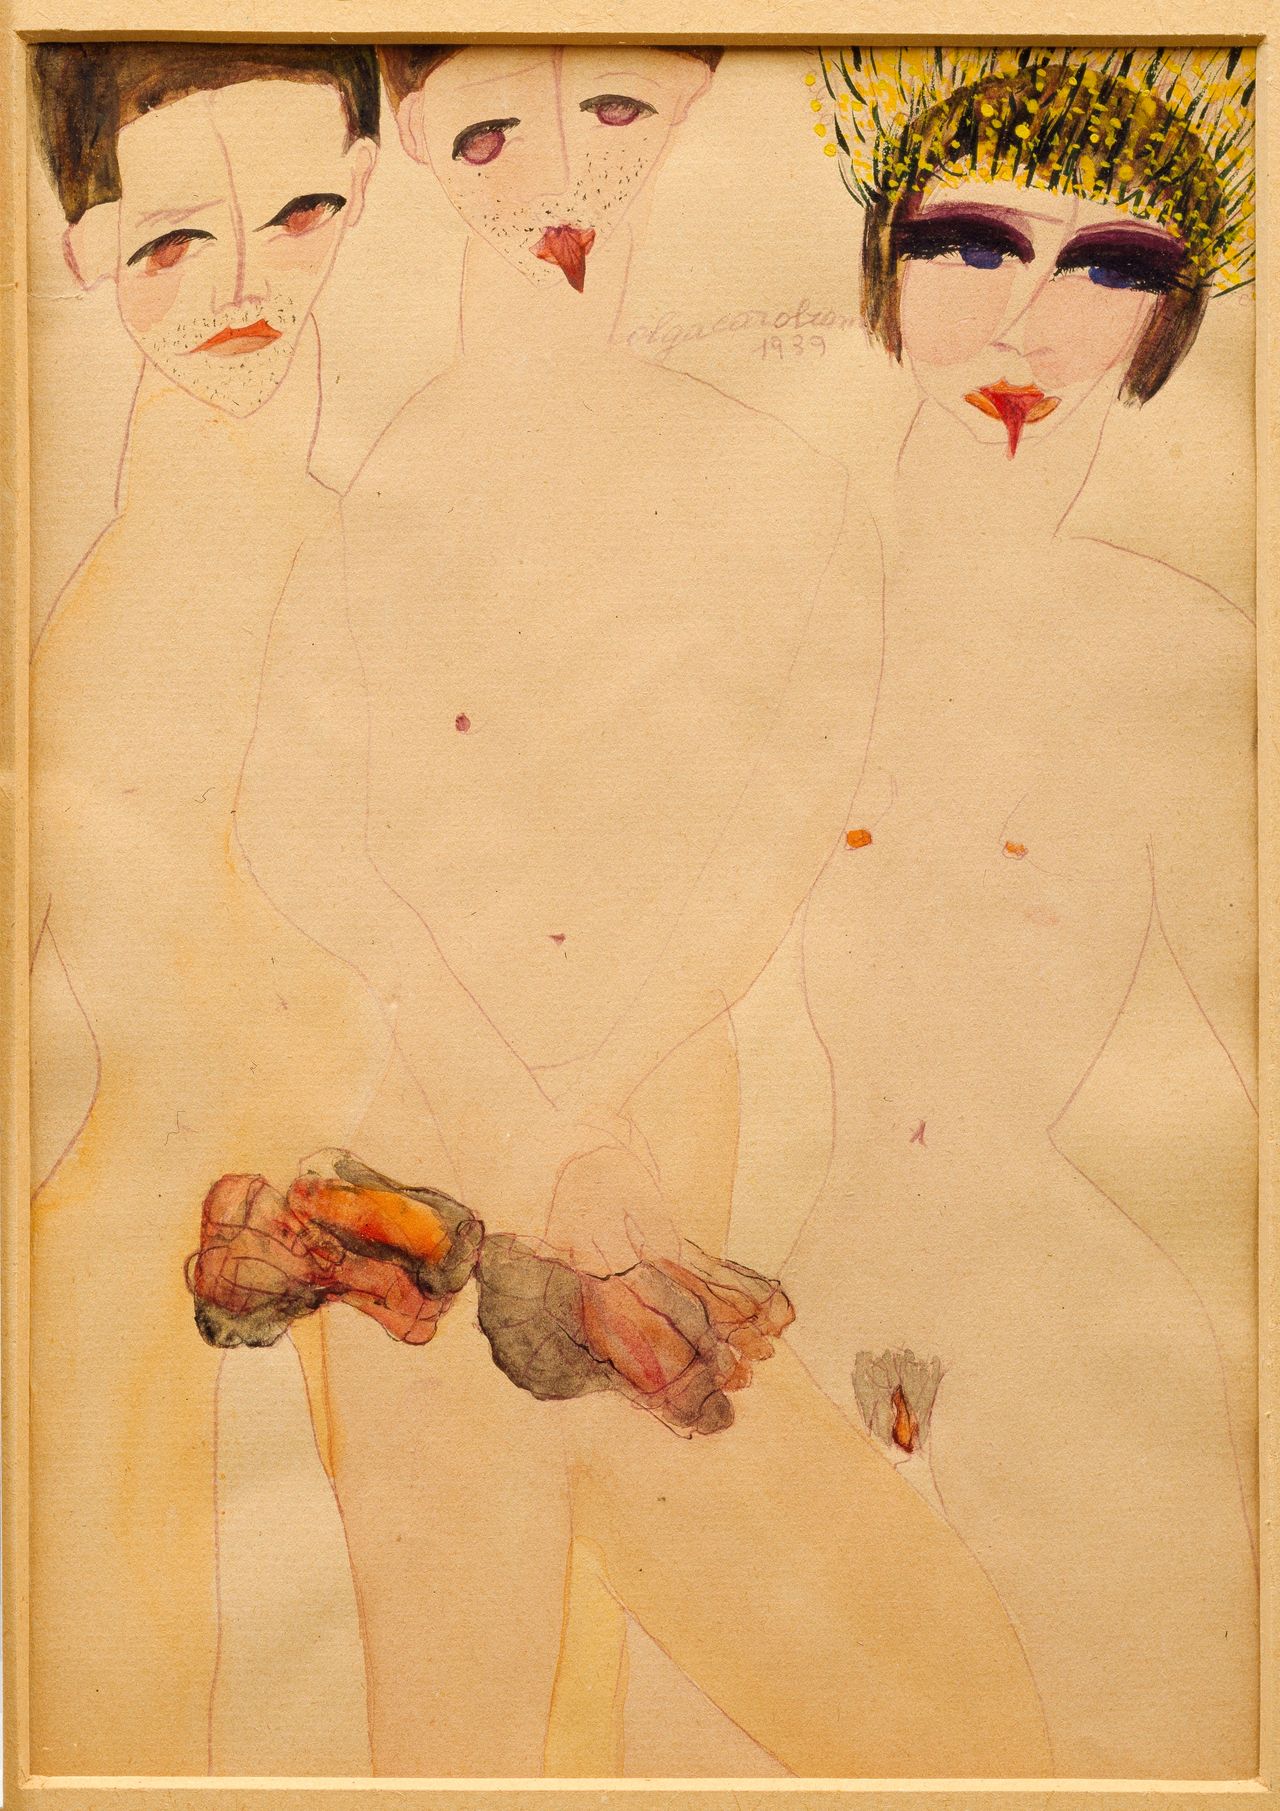 Carol Rama, "Appassionata (Marta e i marchettoni) [Passionate (Marta and the Rent Boys)]," 1939, watercolor on paper